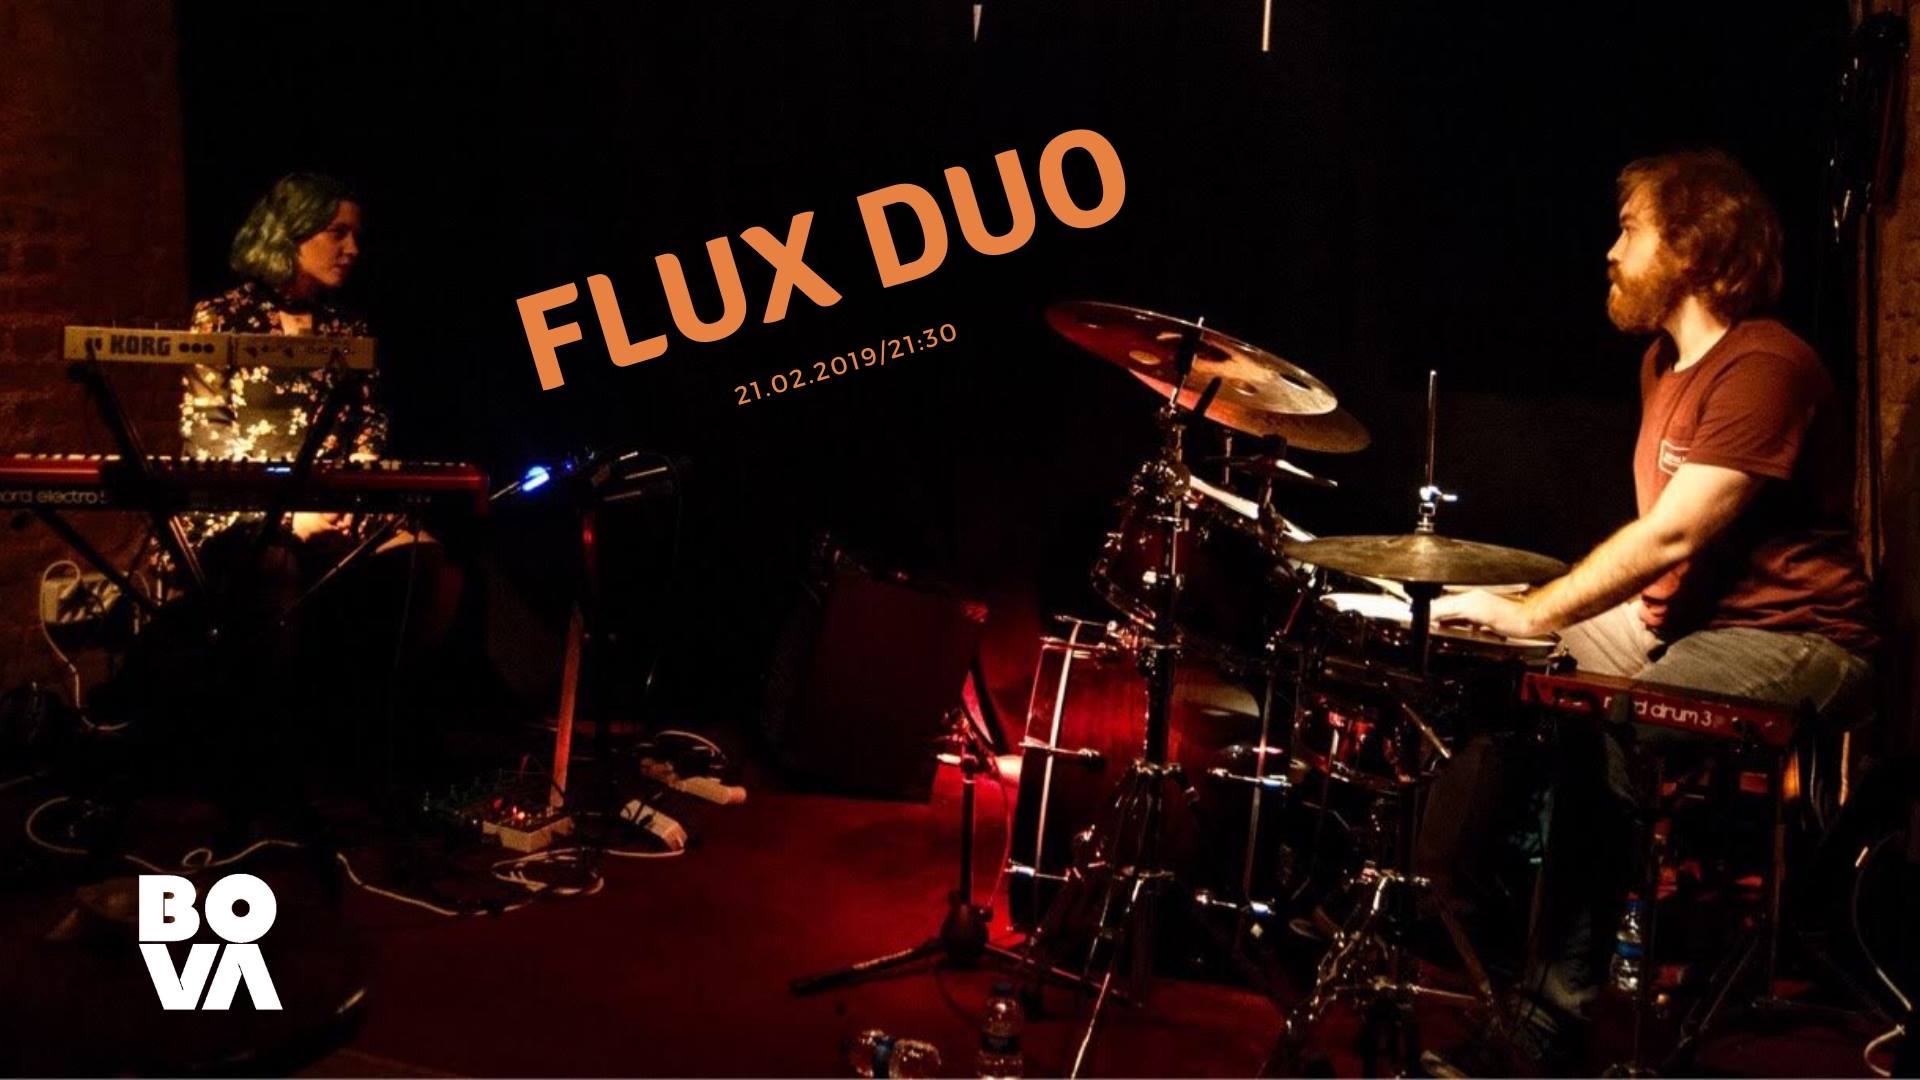 Flux Duo